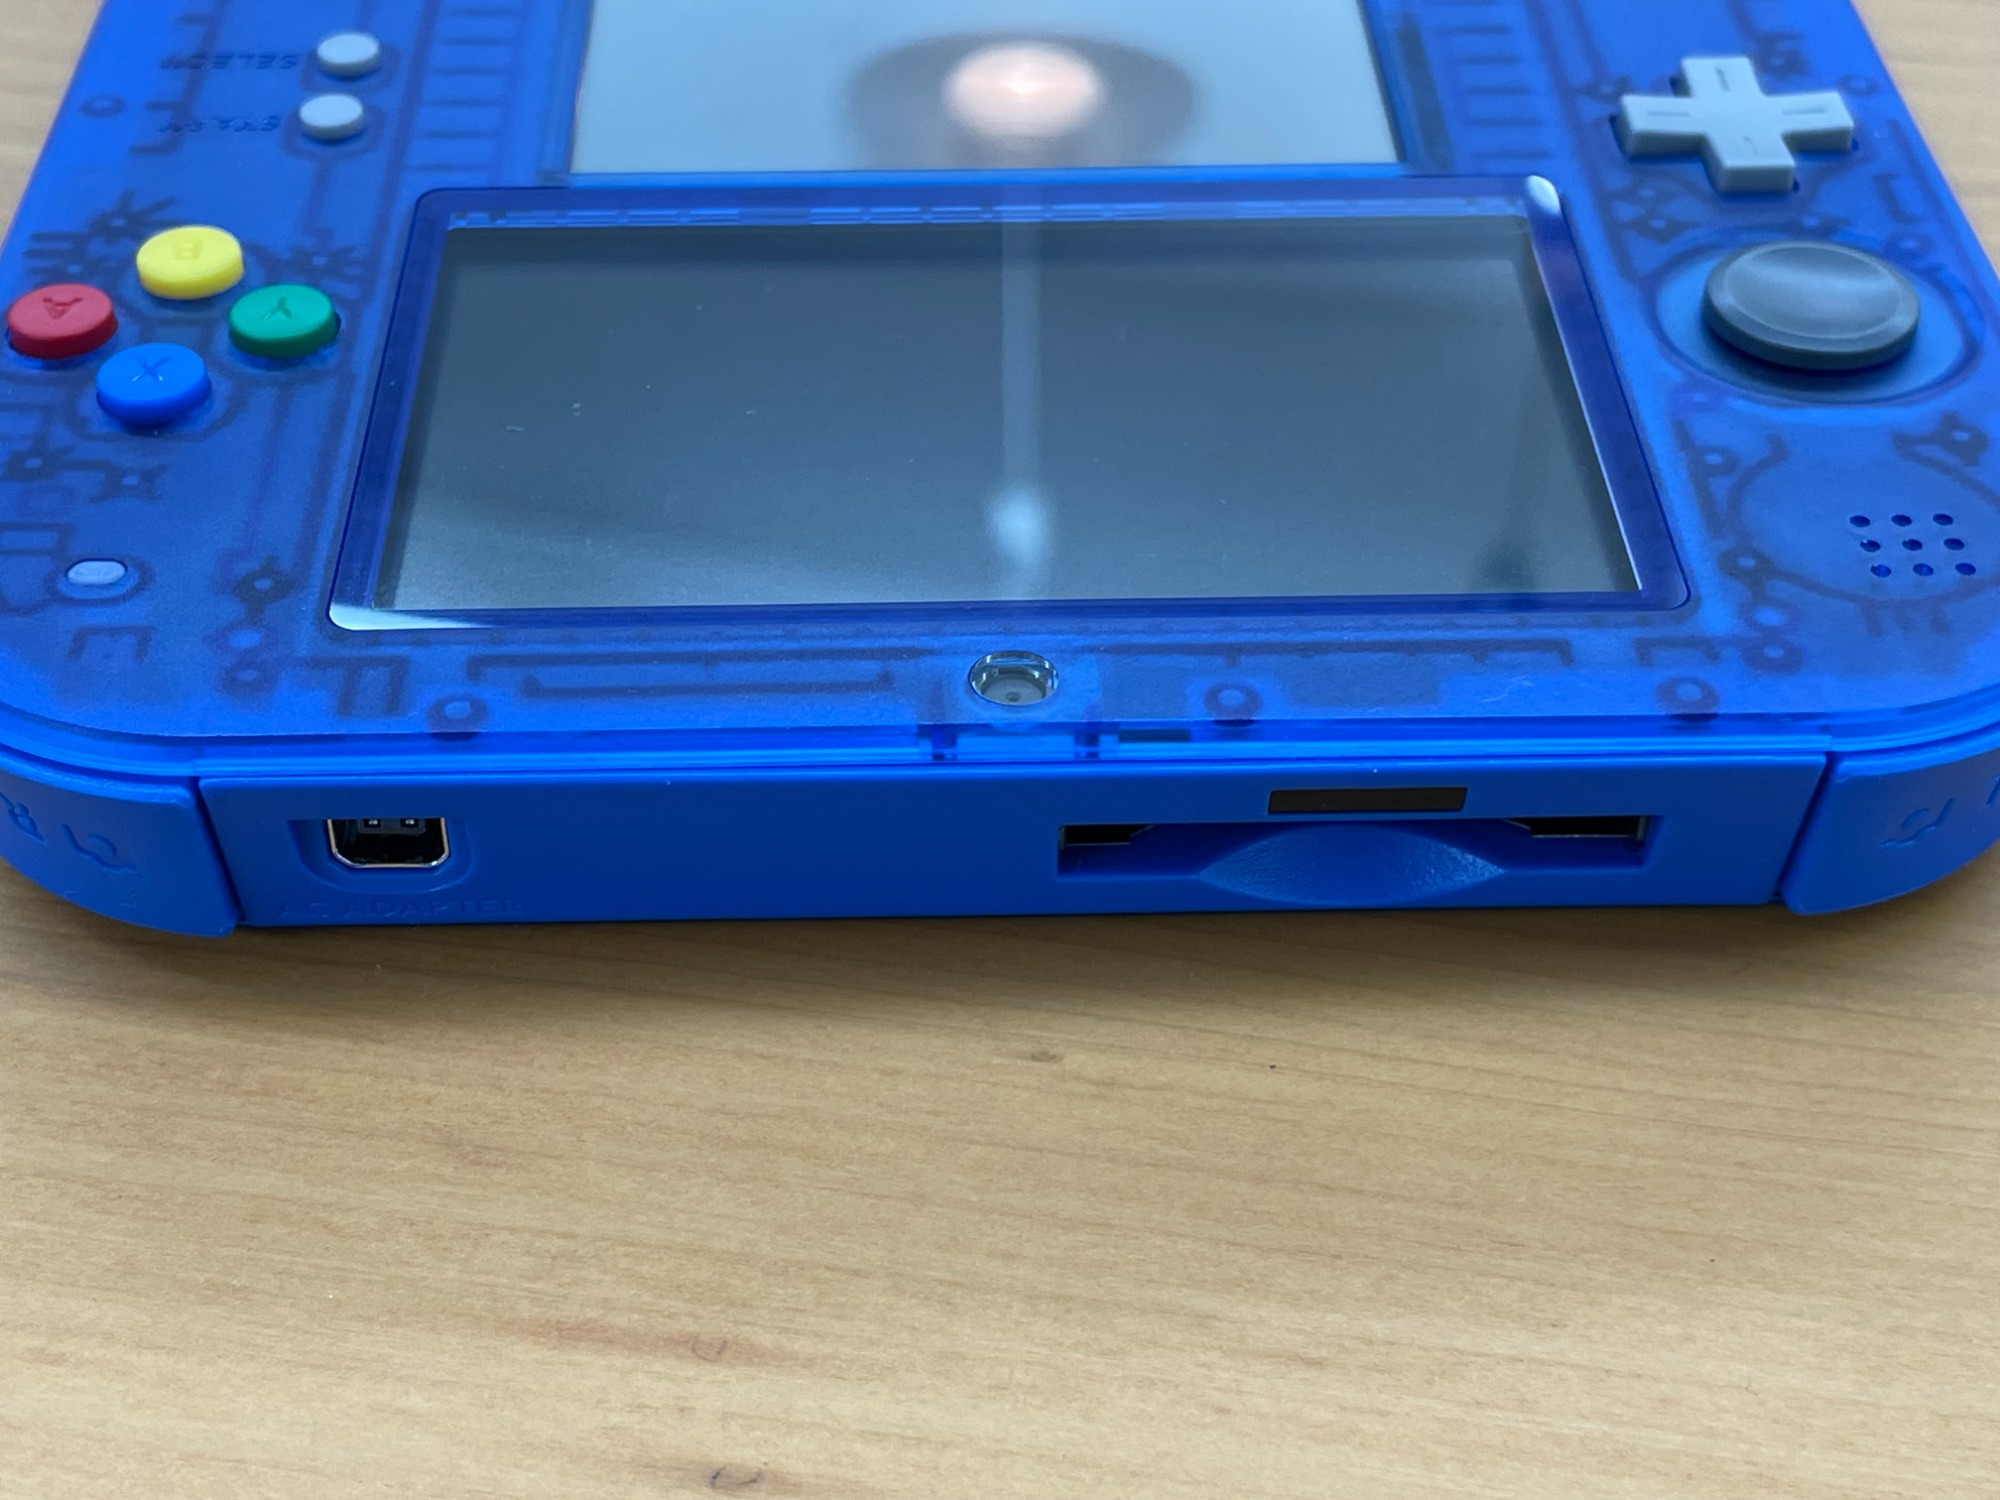 Nintendo/ニンテンドー】2DSのポケモン青限定パックカラーが入荷しま 